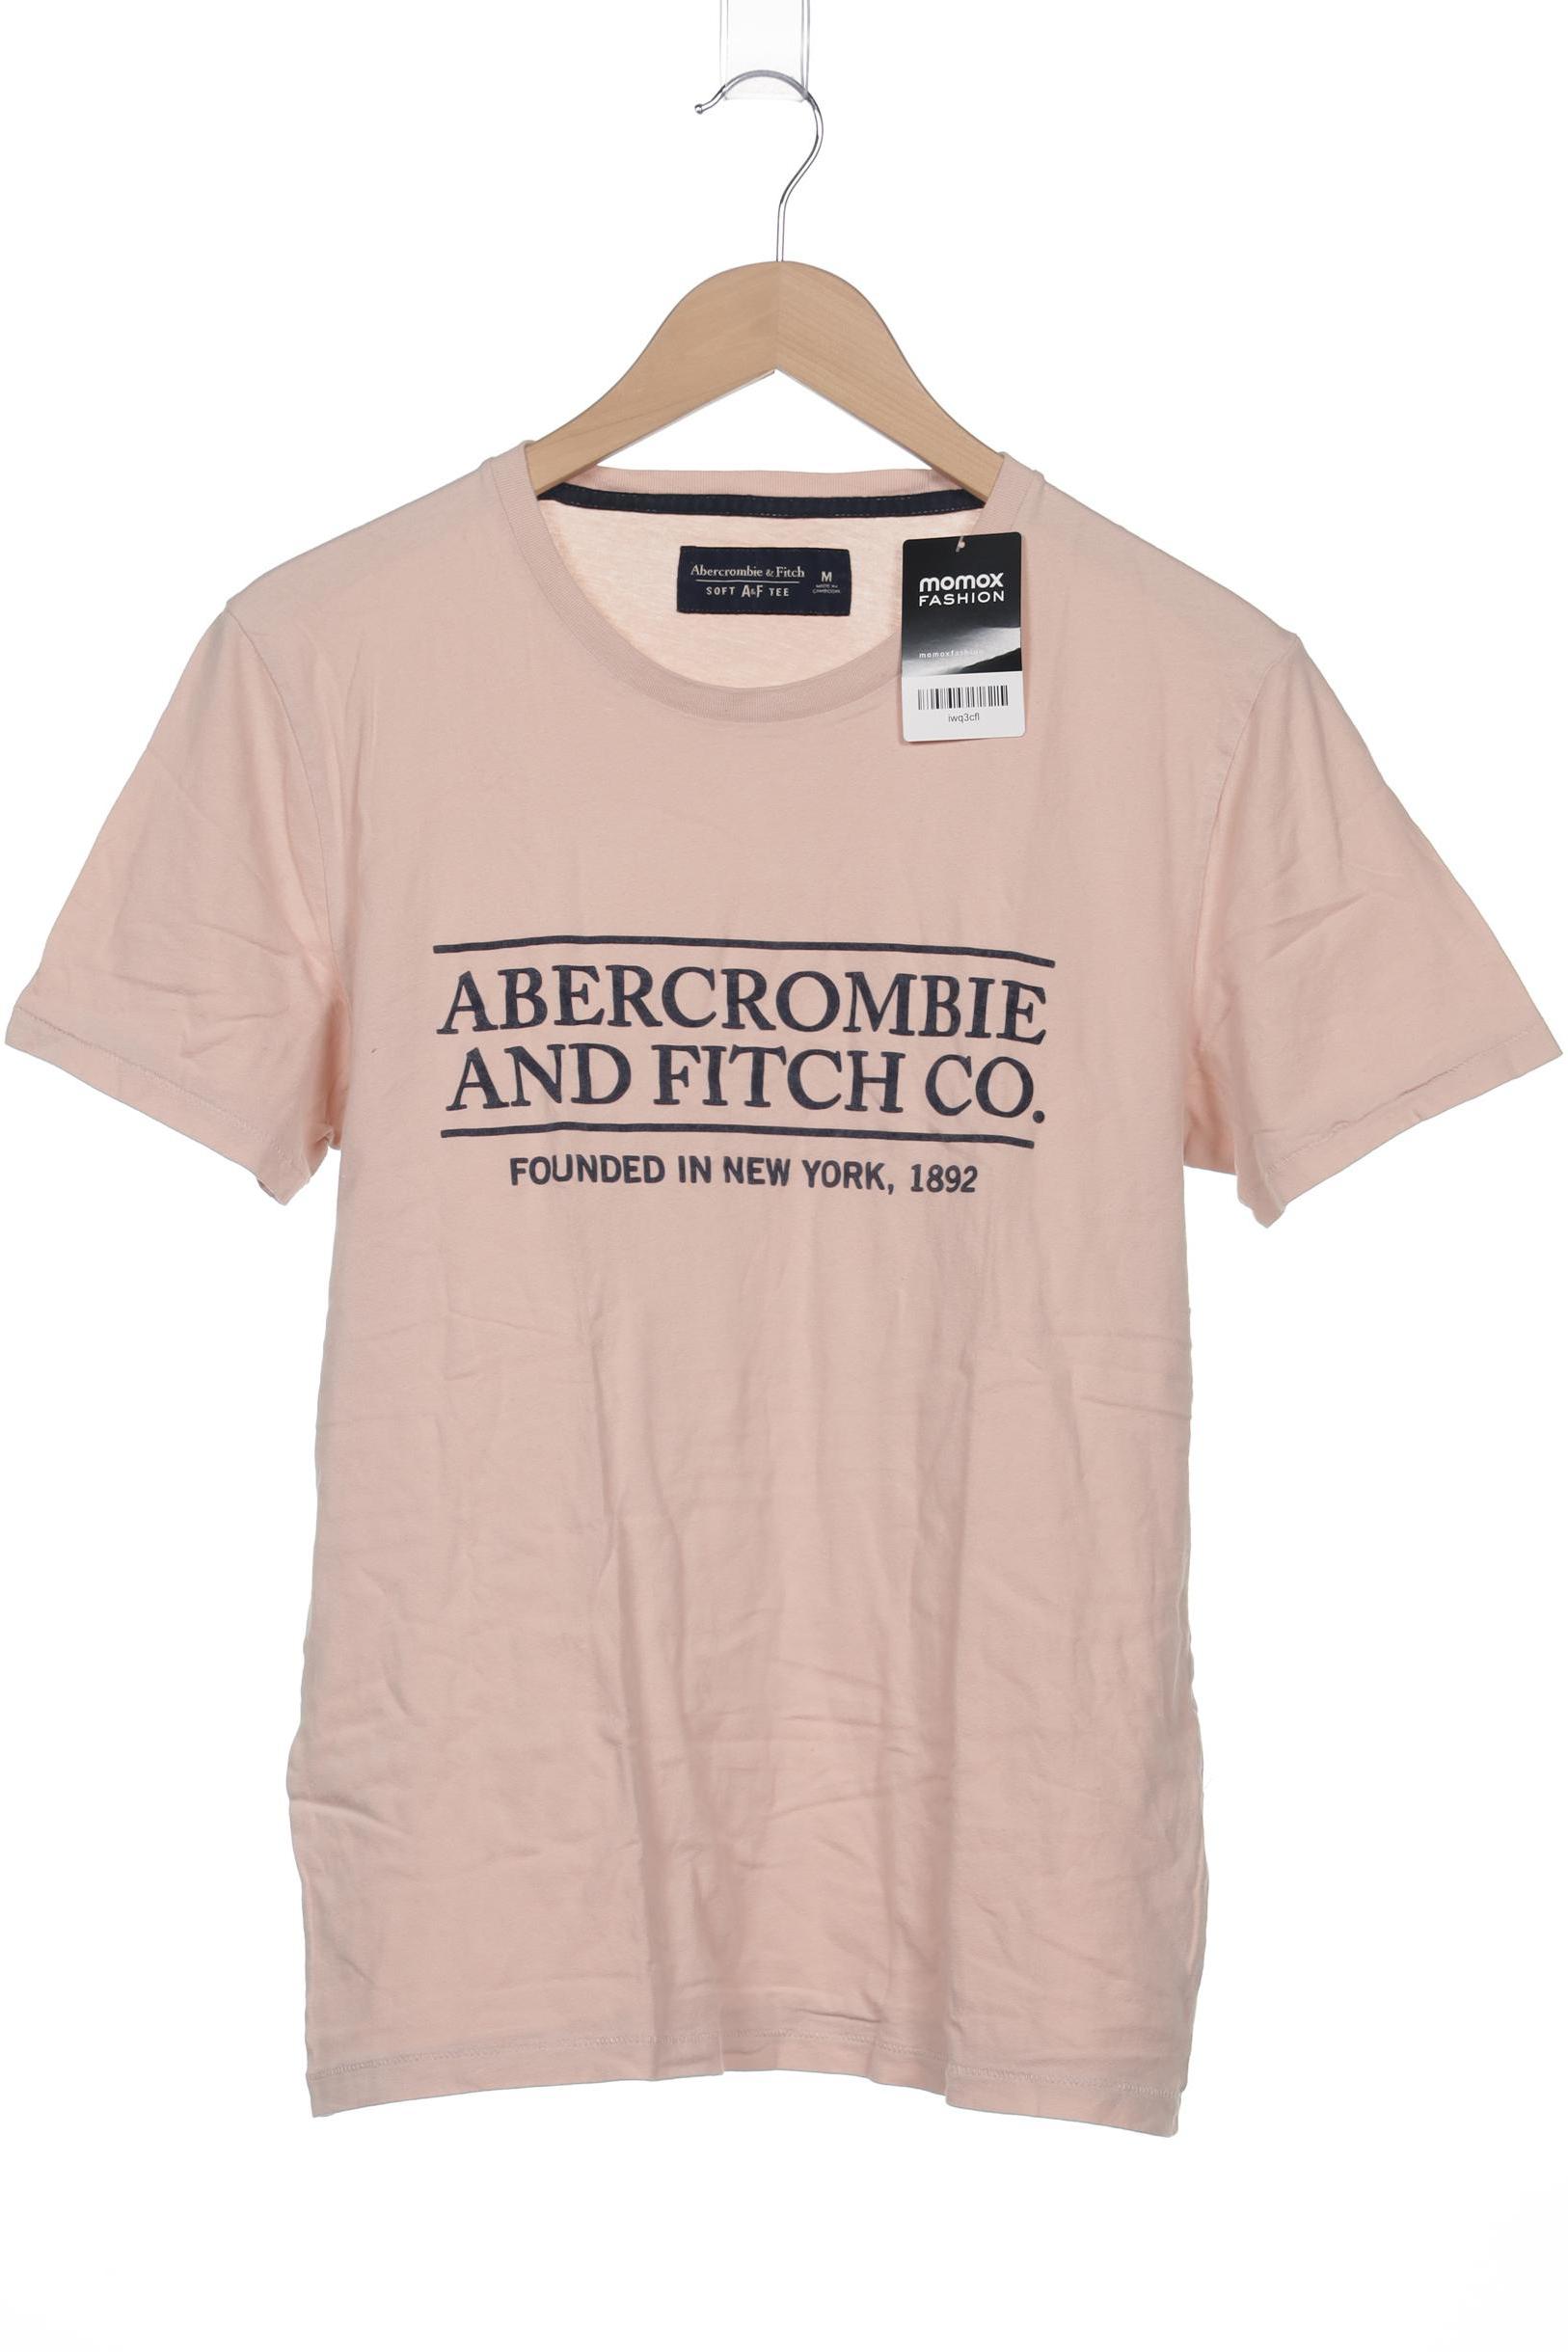 Abercrombie & Fitch Herren T-Shirt, beige, Gr. 48 von Abercrombie & Fitch